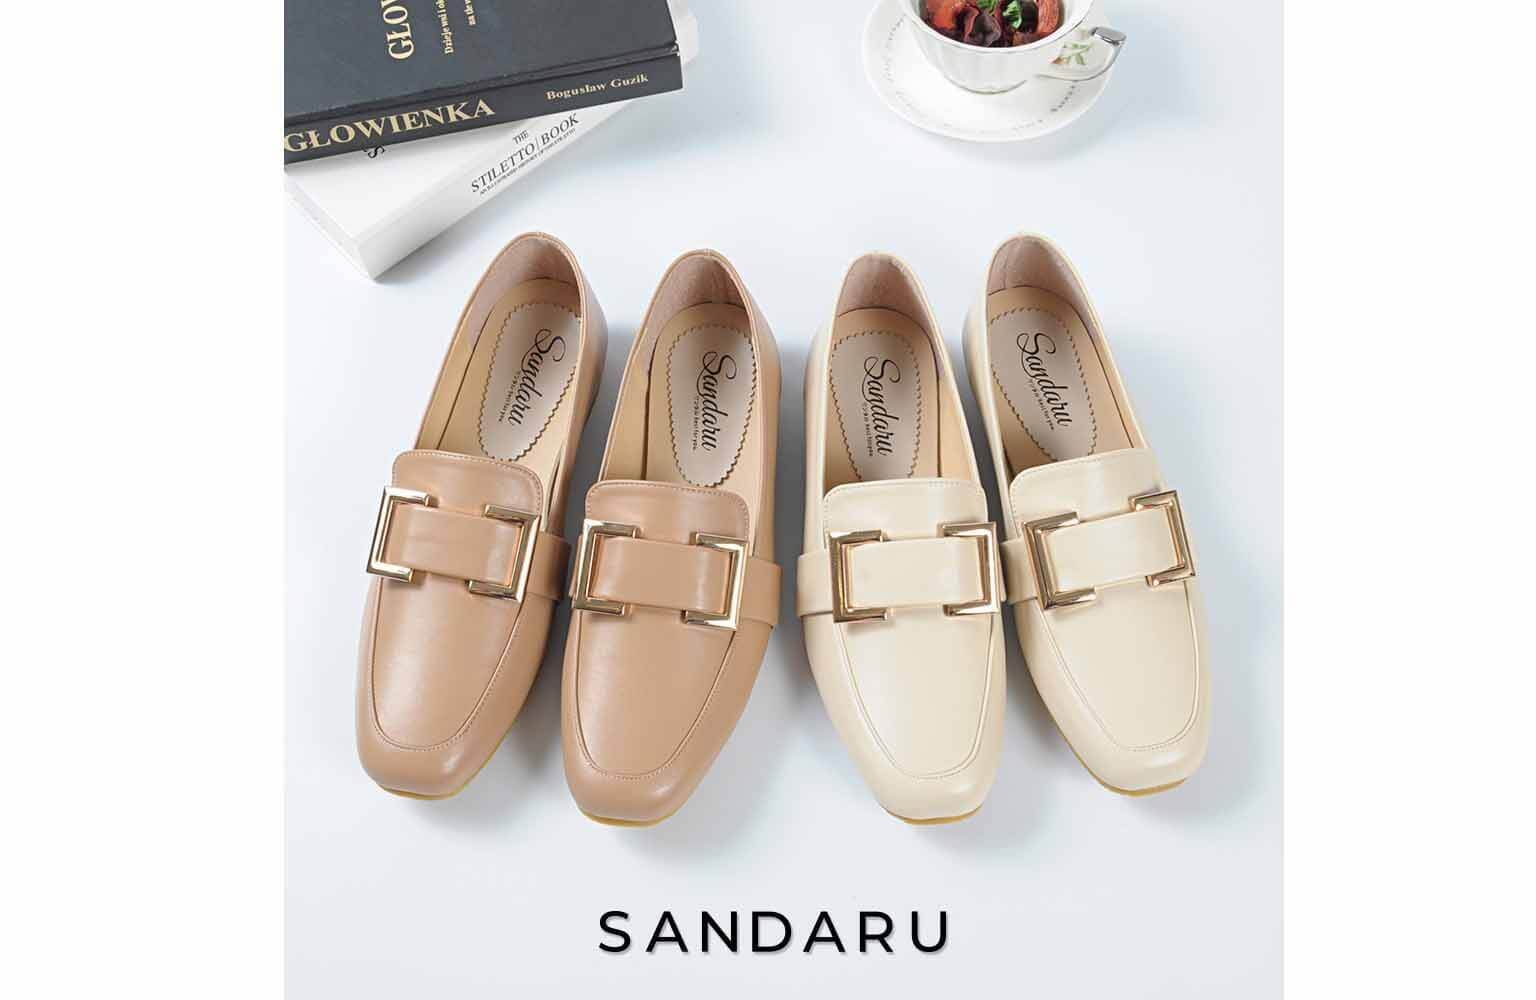 山打努SANDARU女鞋因應客戶需求推出深受女性喜愛的百搭樂福鞋